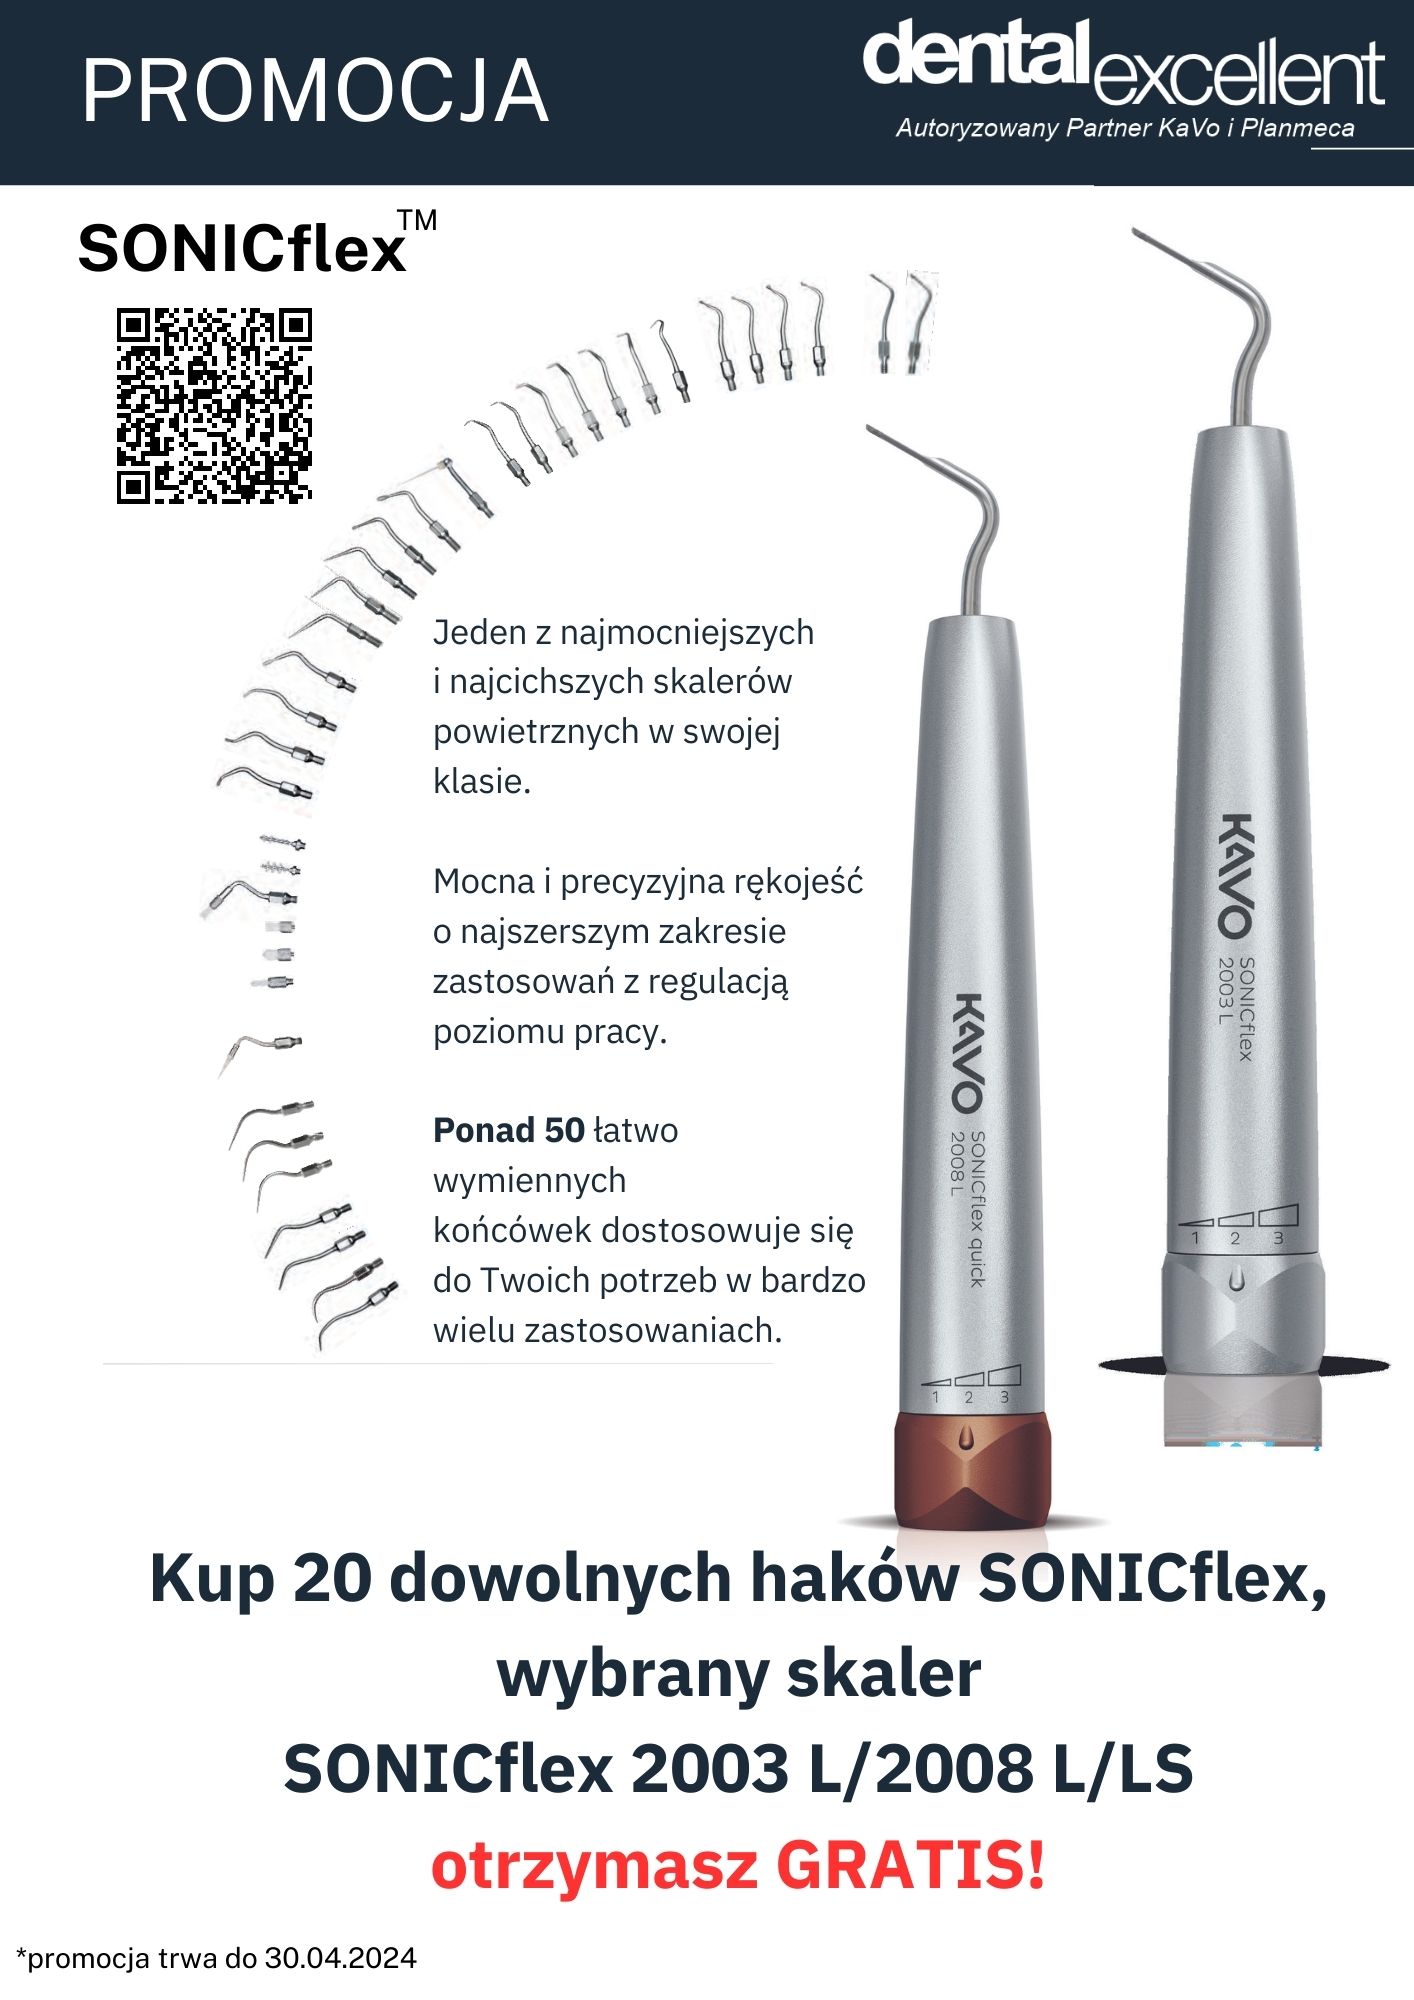 Promocja skaler KaVo SONICflex GRATIS!